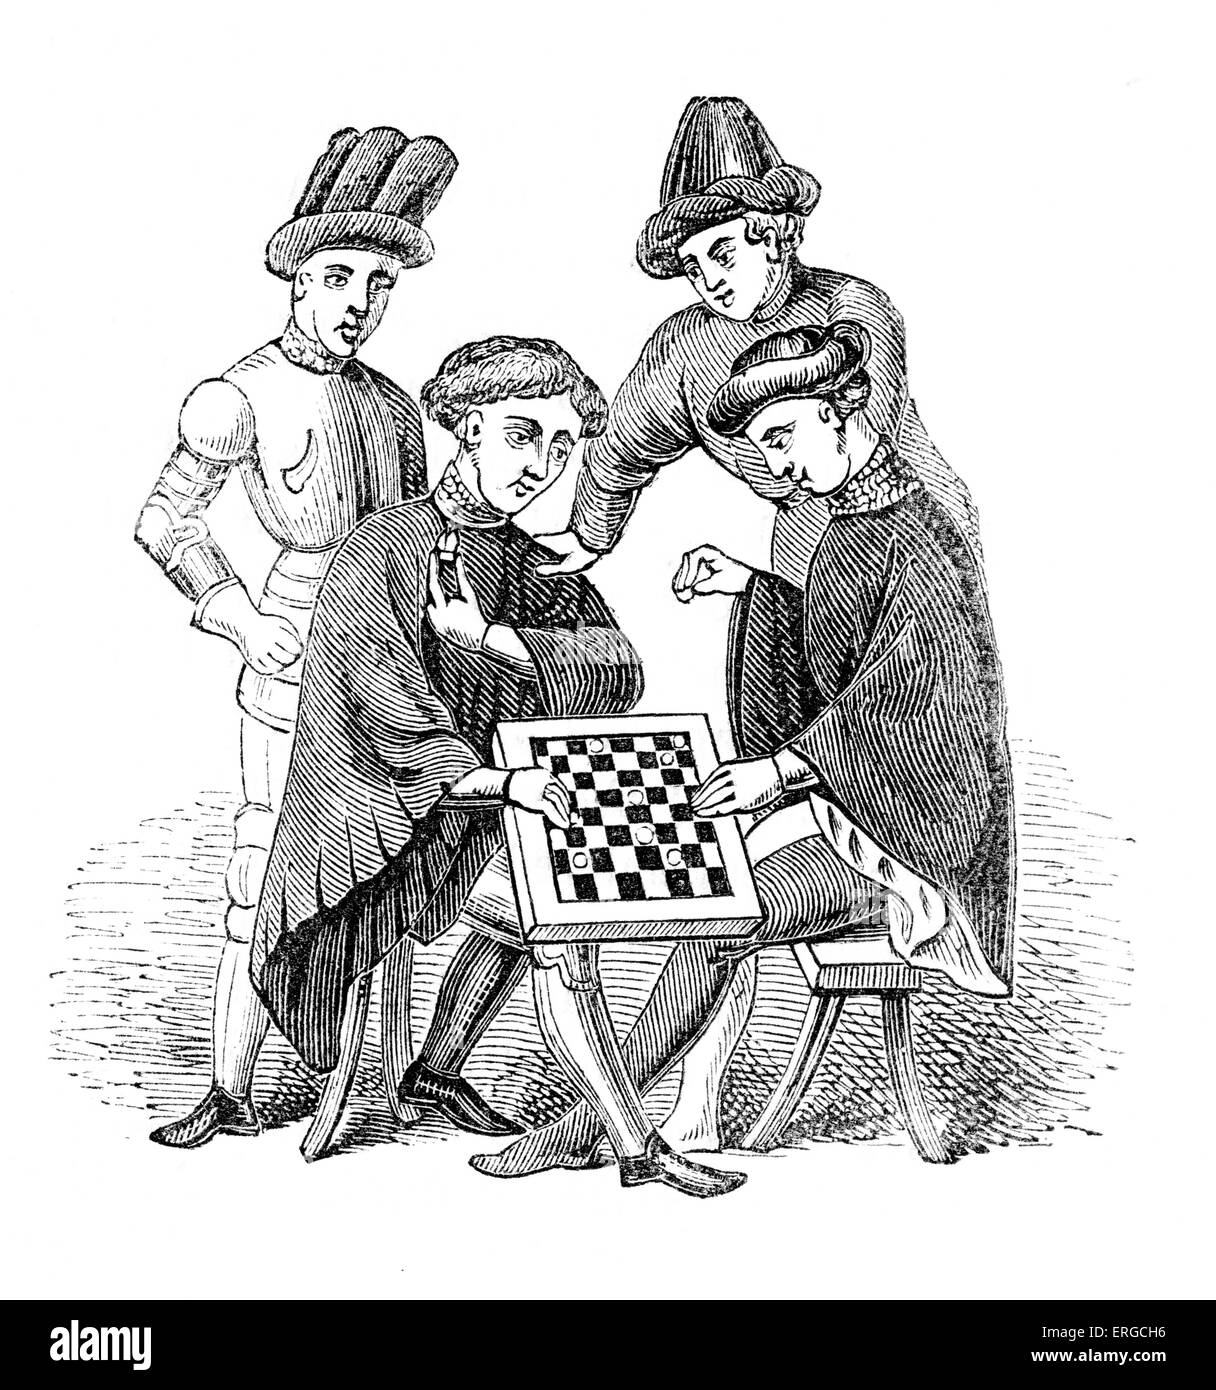 Gli uomini che giocano a Progetti - da incisione basata sul manoscritto illuminato di Harleian genealogie. Vecchio genealogie gallese, c. Foto Stock